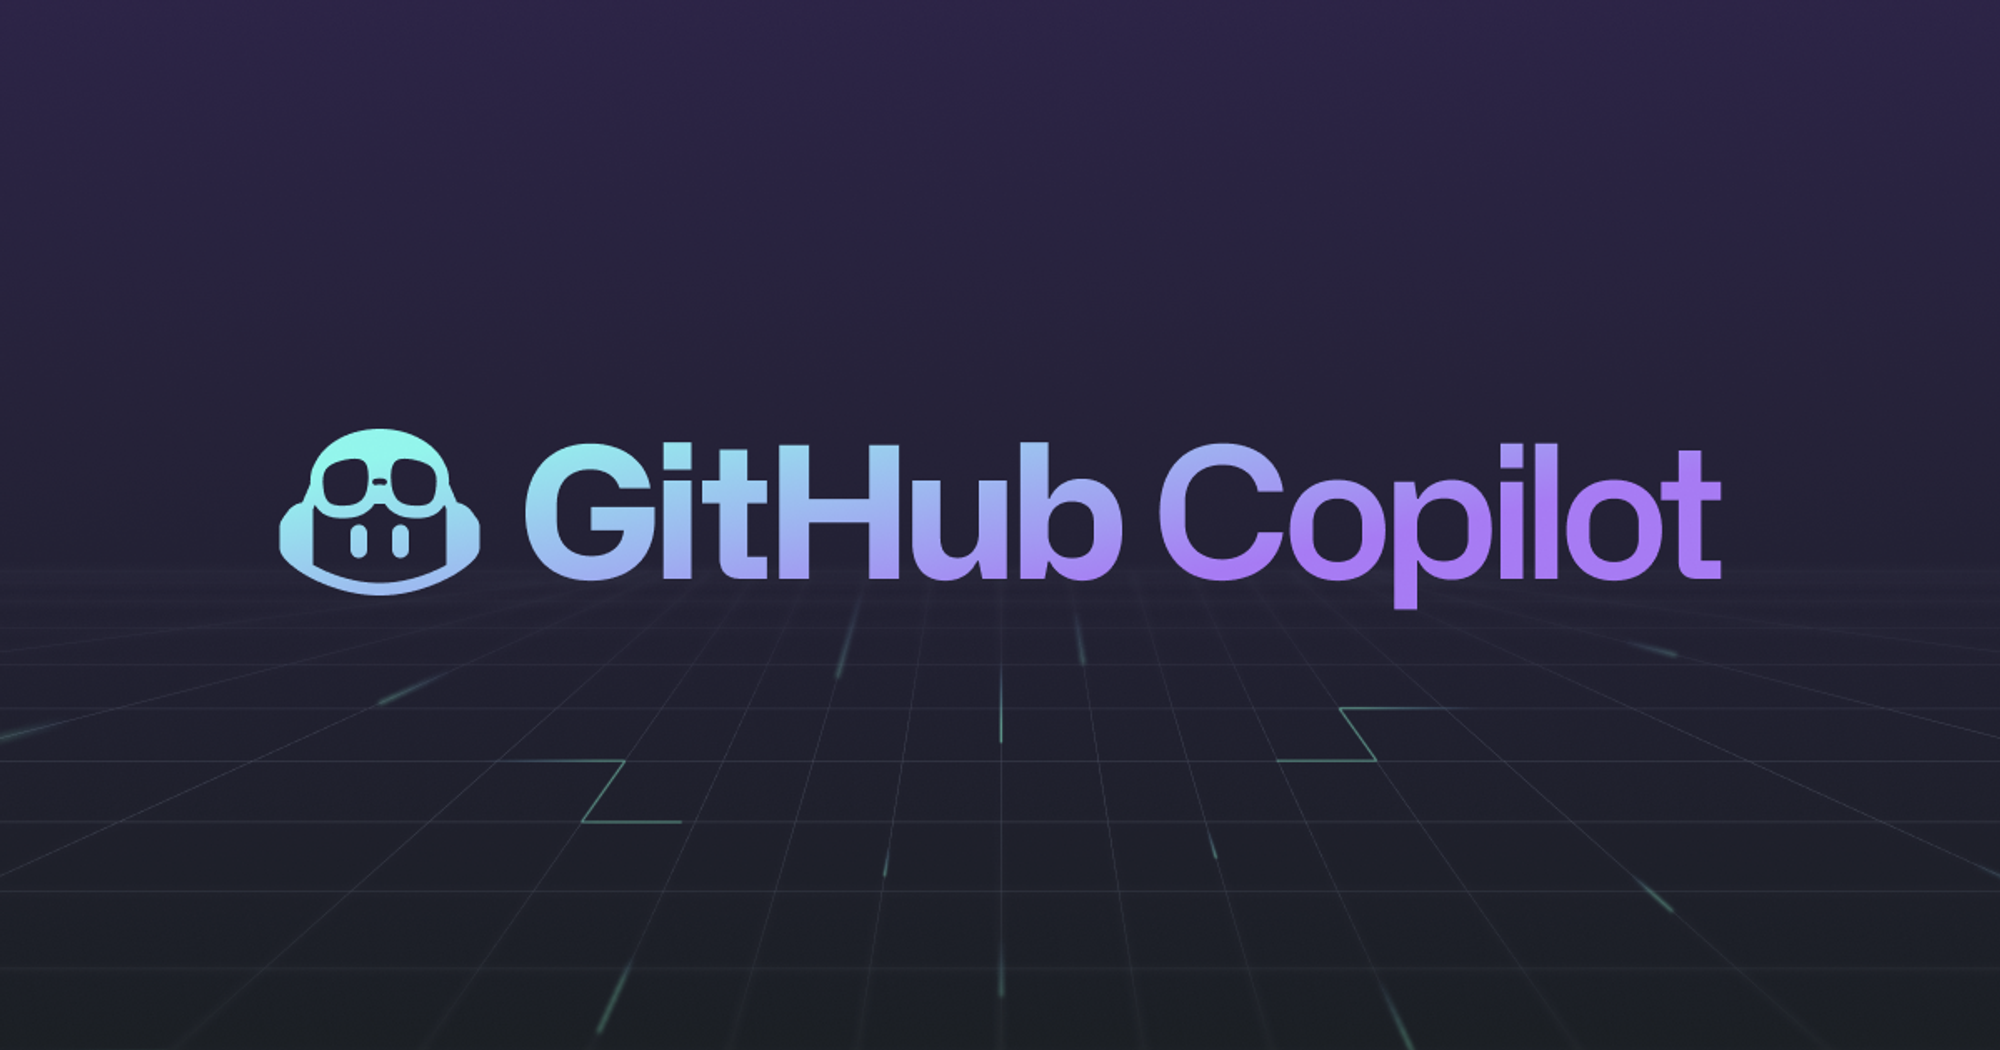 https://github.com/features/copilot